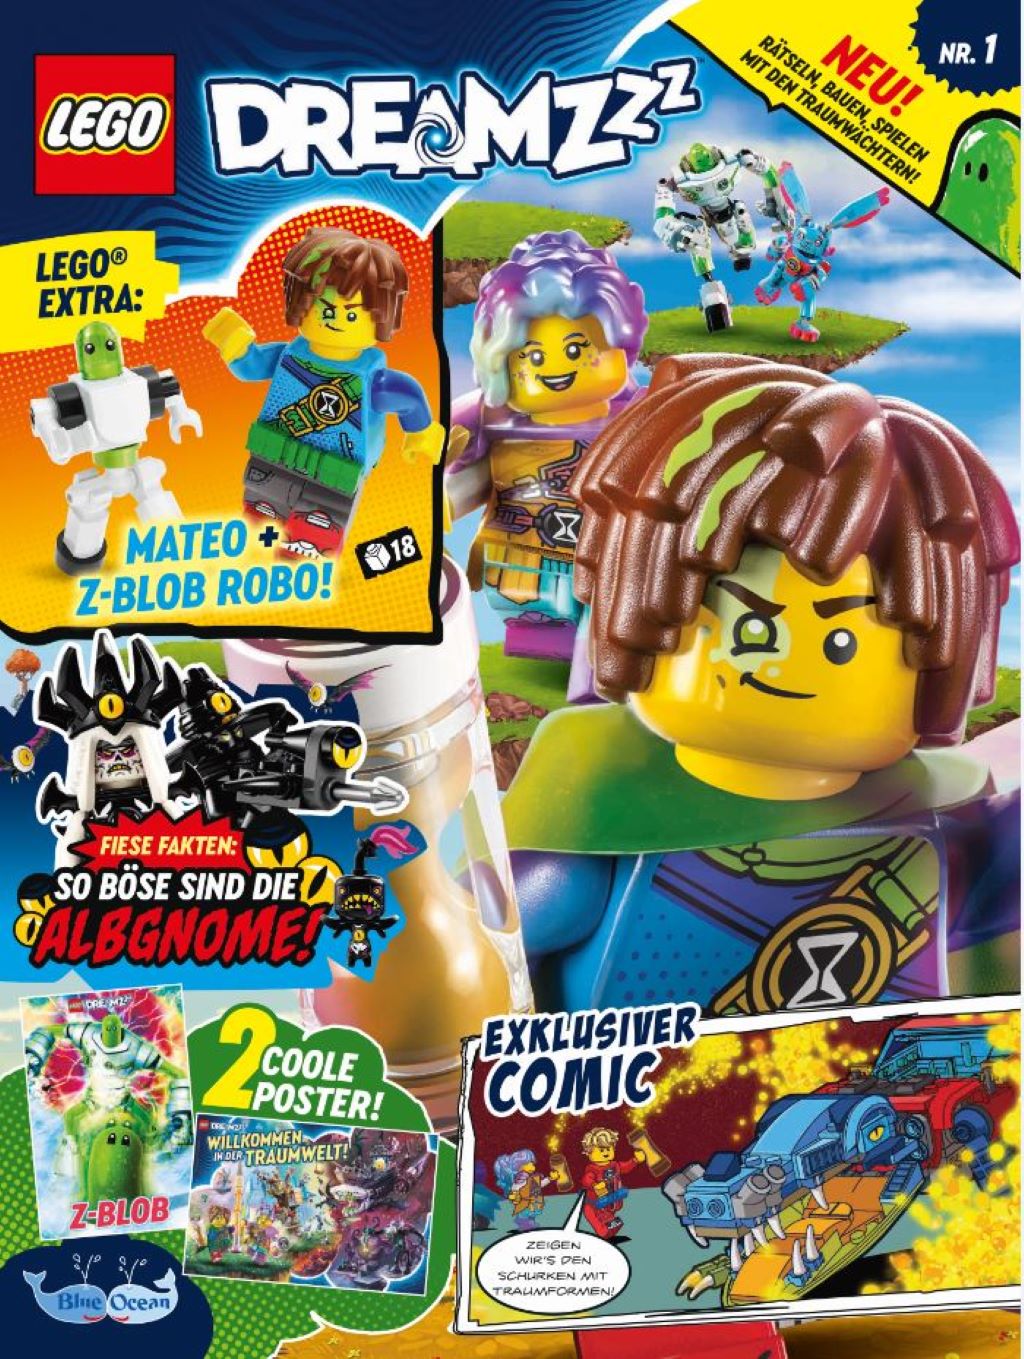 LEGO Dreamzzz Magazin